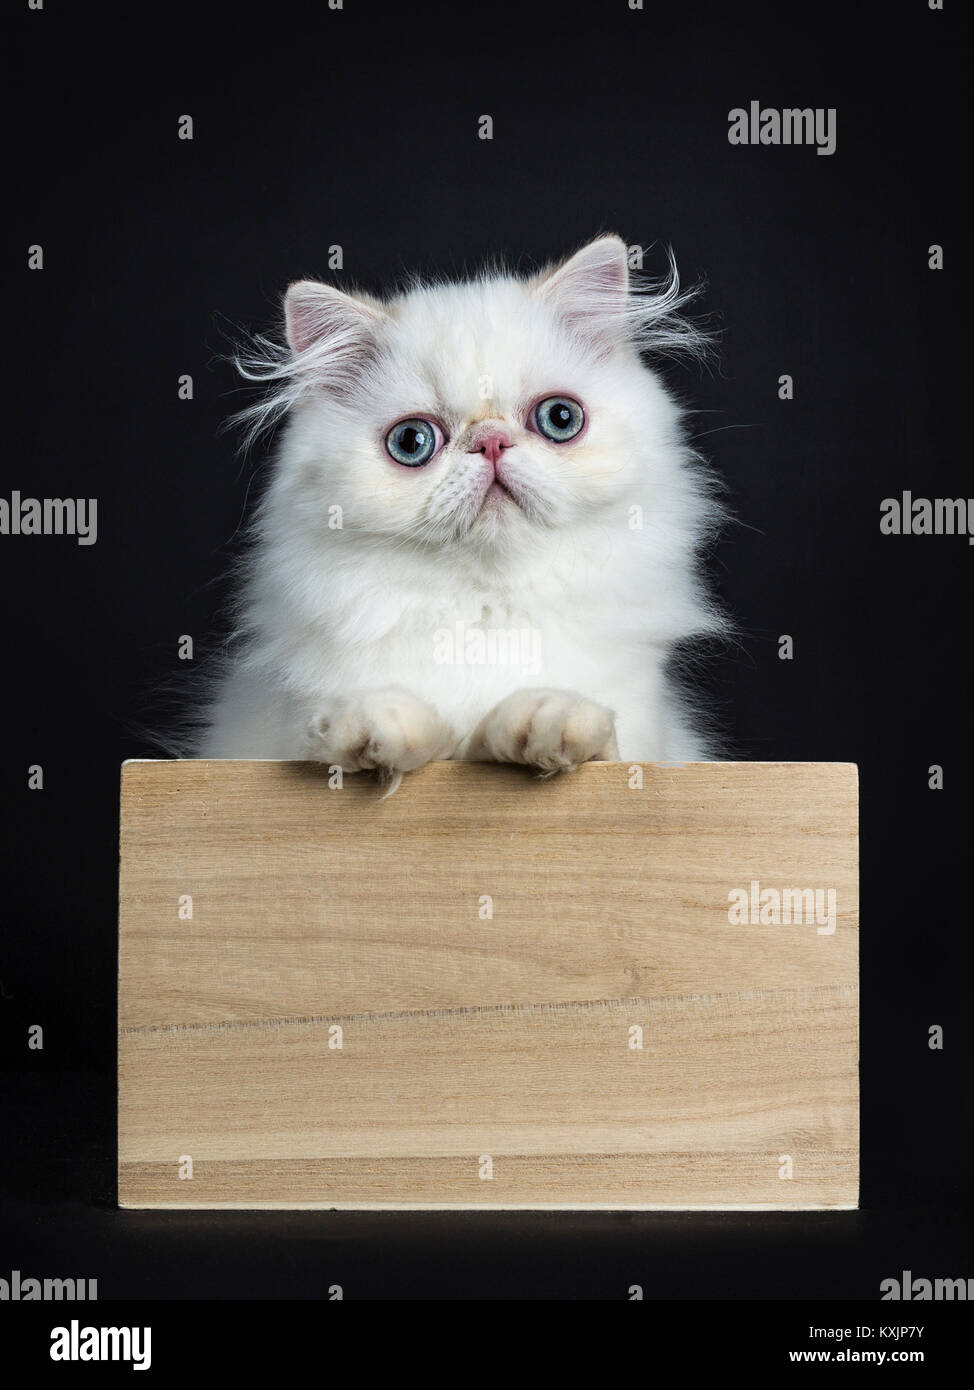 Gatto persiano / gattino in piedi in una scatola di legno isolato su sfondo nero guardando dritto nella telecamera con zampe sul bordo della scatola Foto Stock